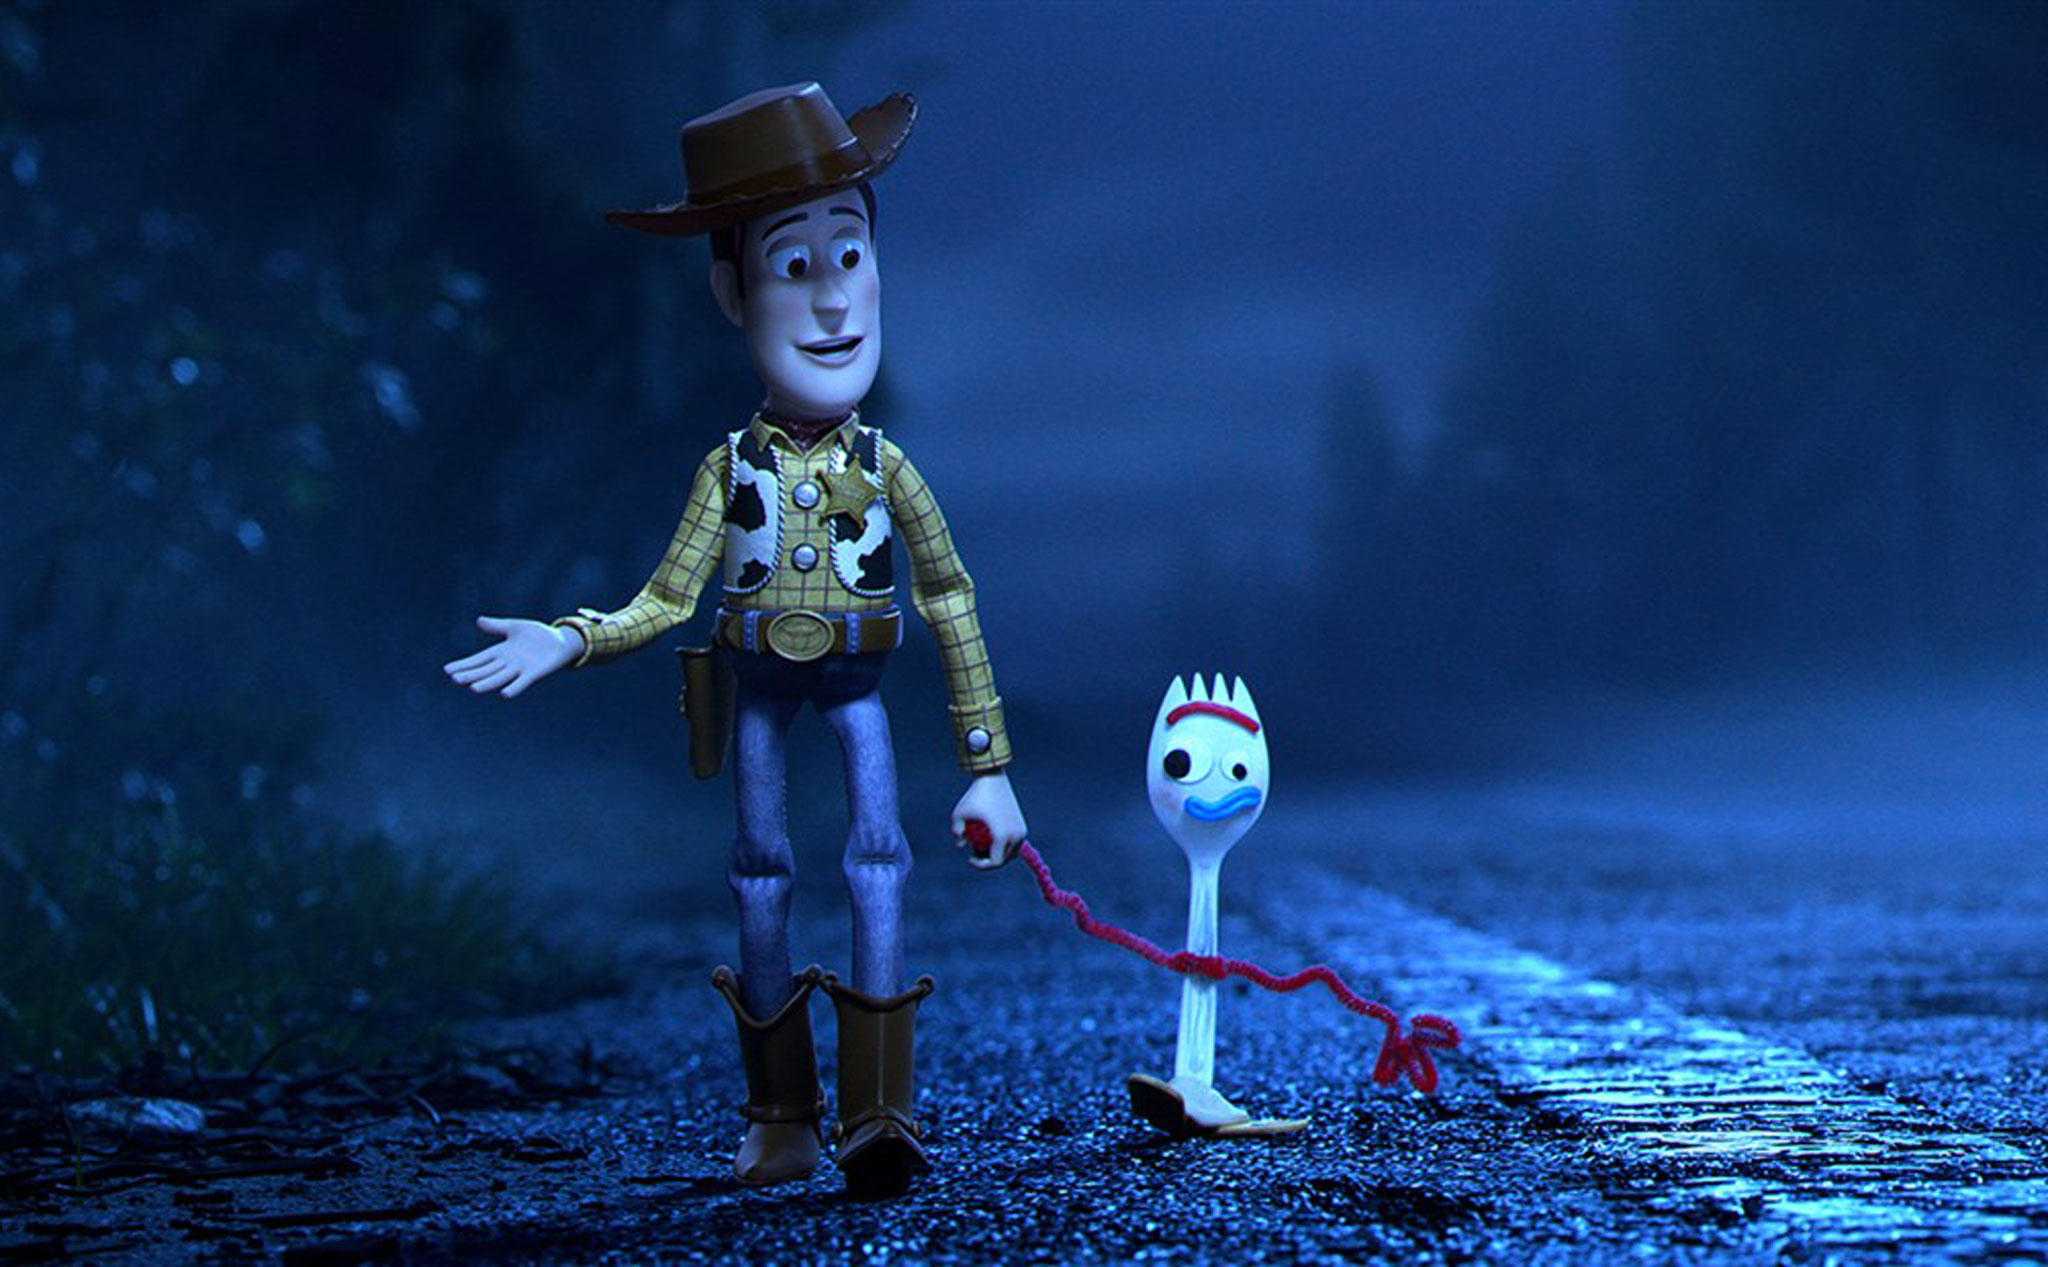 Mời anh em xem trailer mới nhất của Toy Story 4, dự kiến ra rạp tháng 6 năm nay